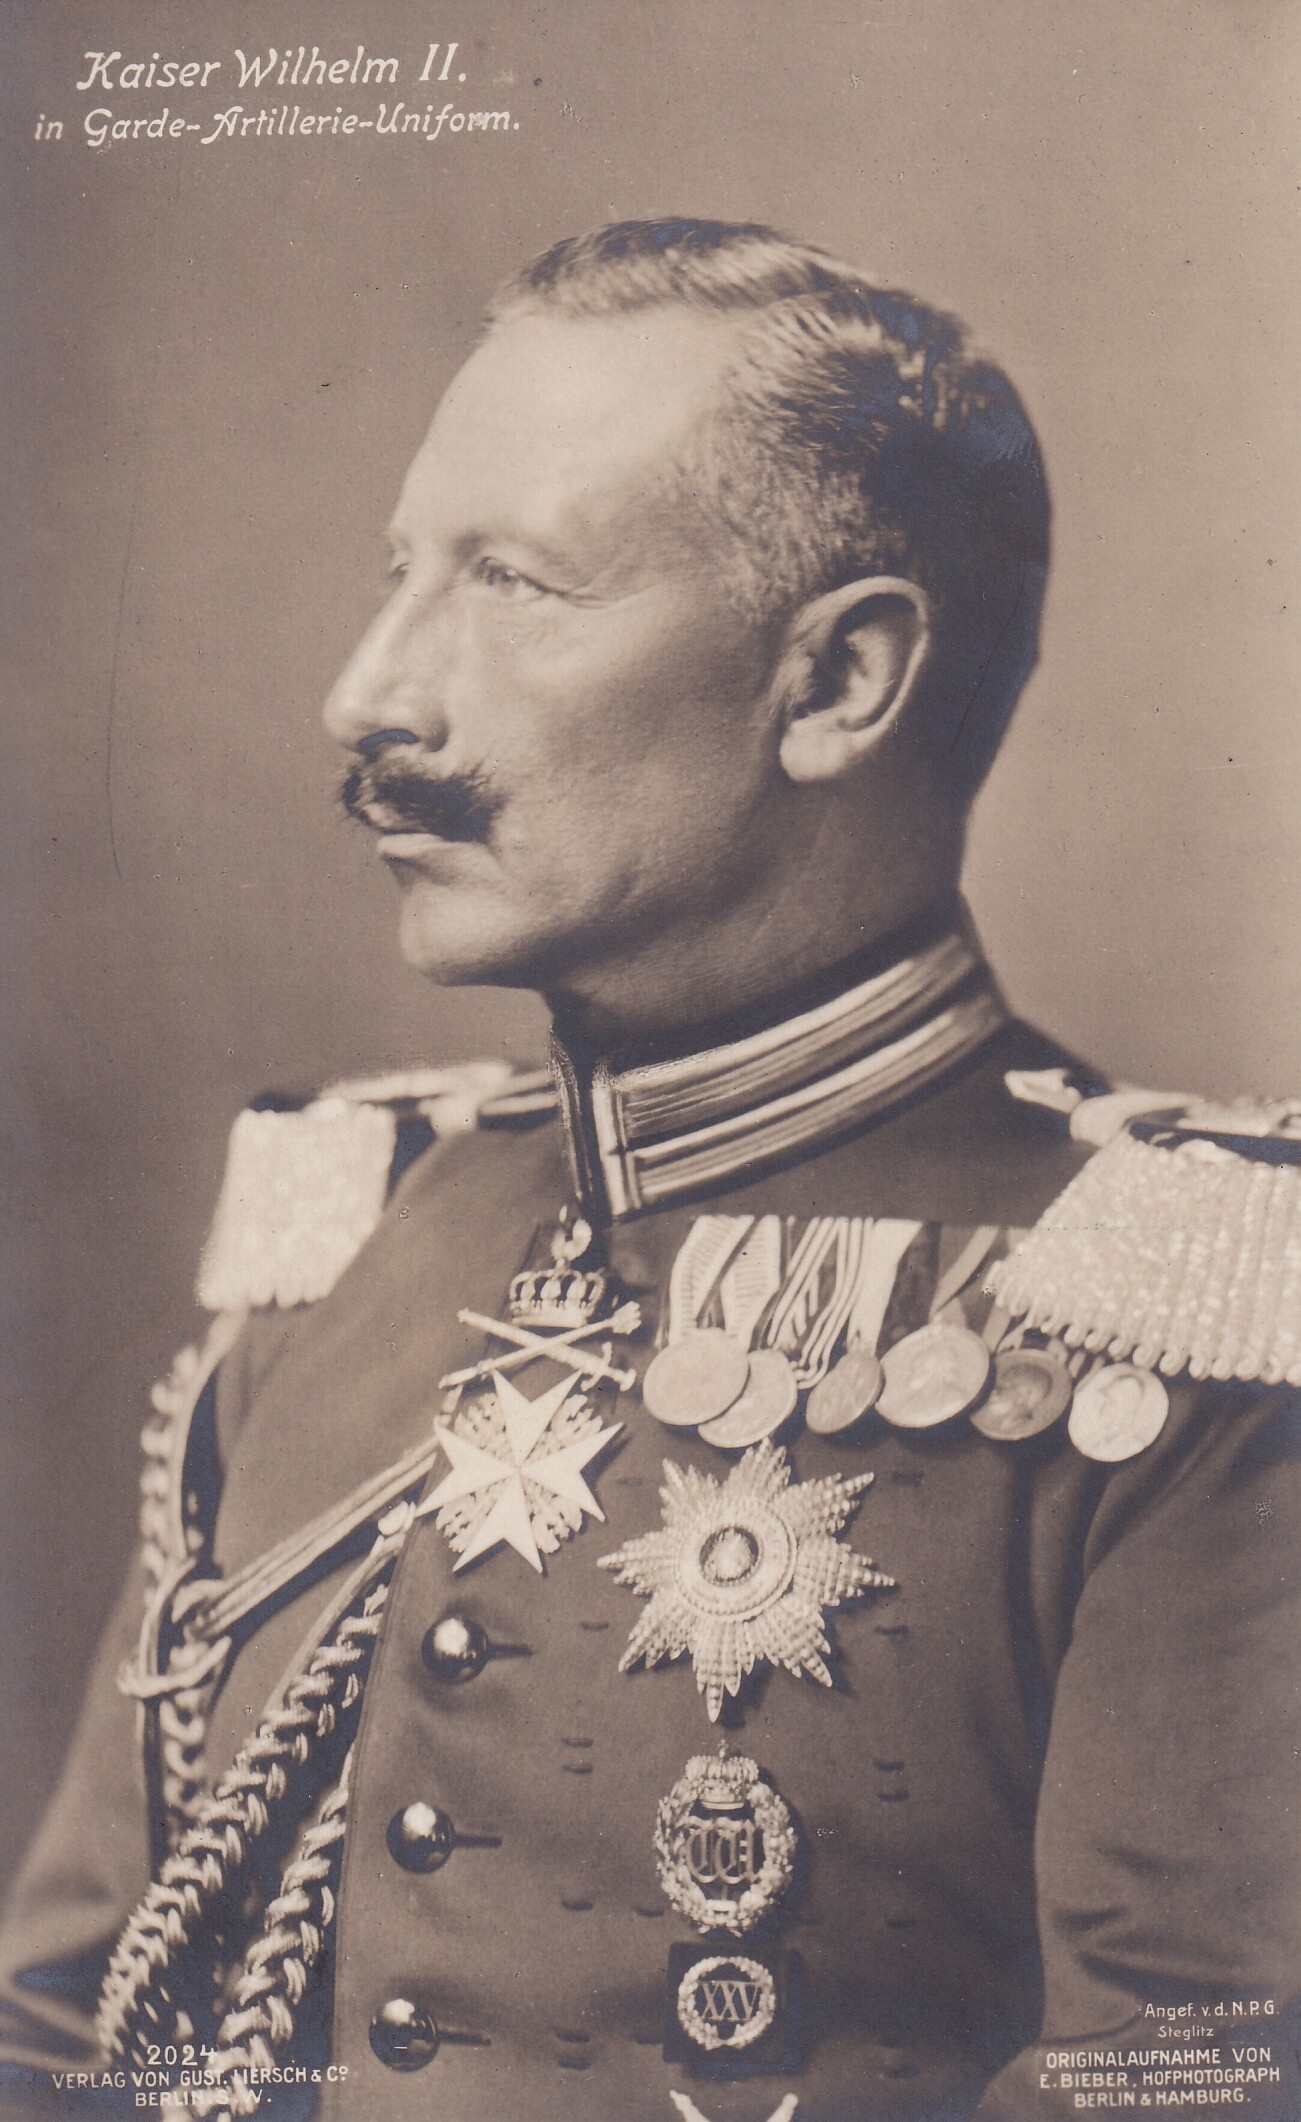 Bildpostkarte mit Foto des letzten deutschen Kaisers Wilhelm II. (1859-1941) in Garde-Artillerie-Uniform, 1908. (Schloß Wernigerode GmbH RR-F)